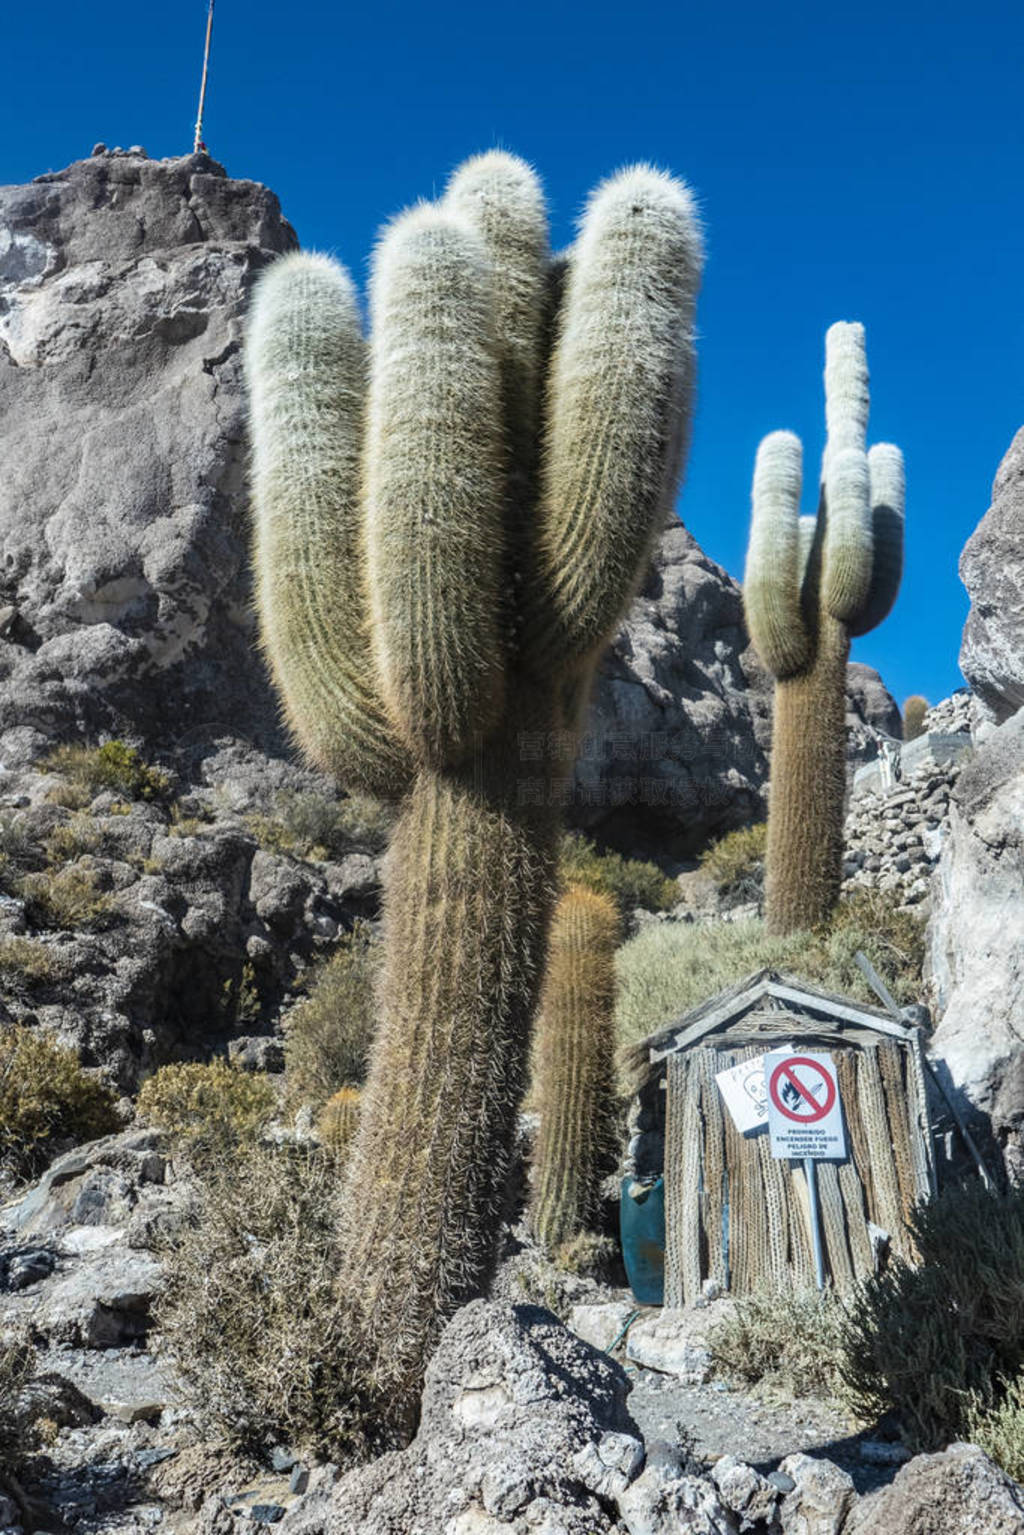 cacti at The Isla Incahuasi at the Salar de Uyuni